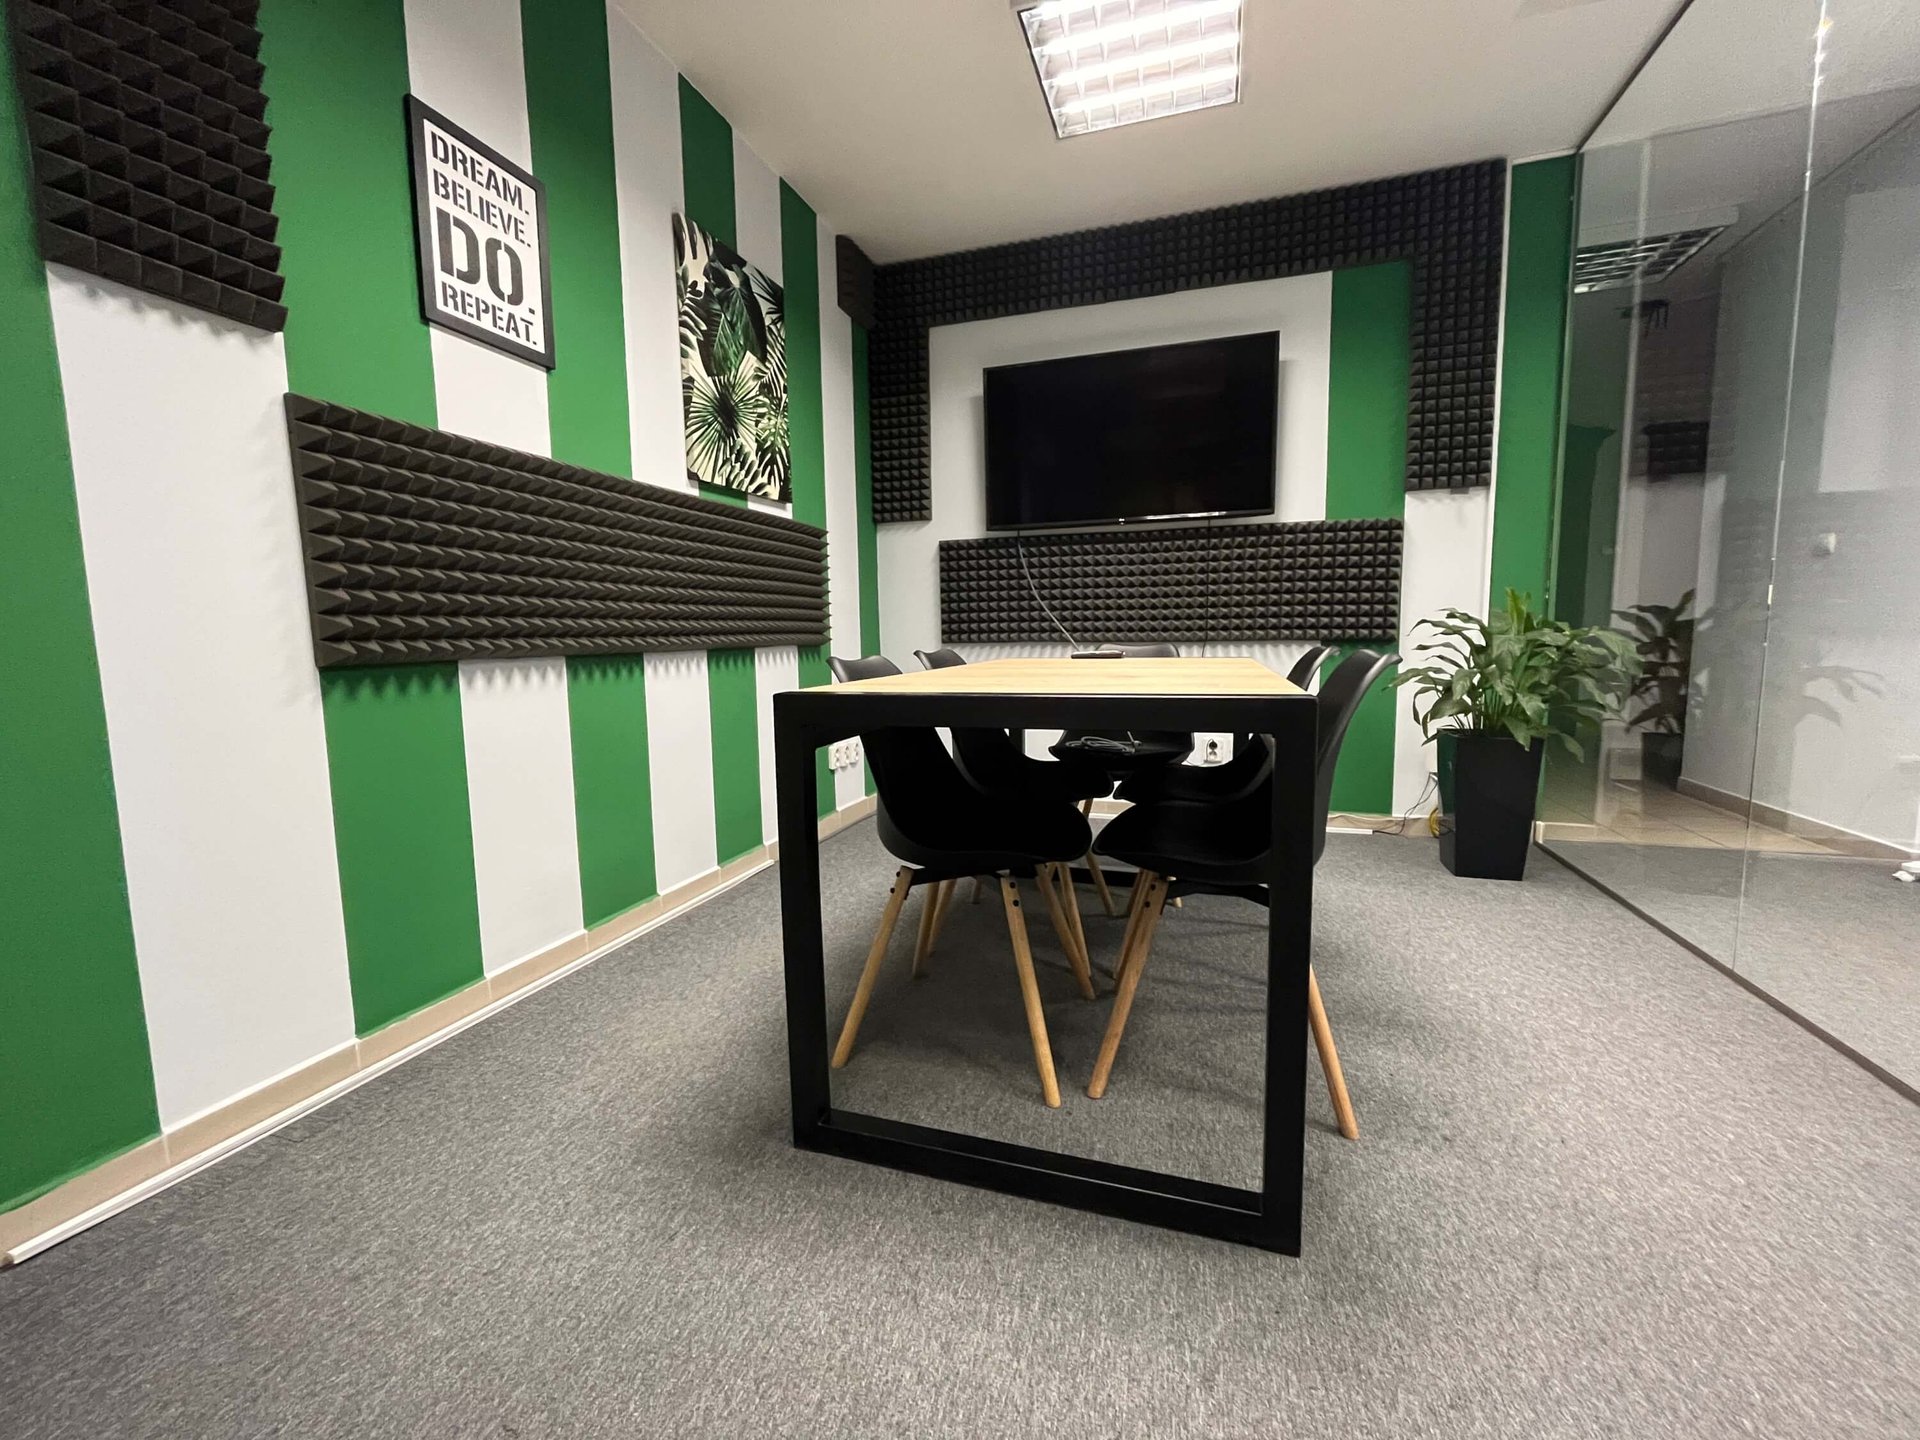 4 fős iroda itt: Desking.pl